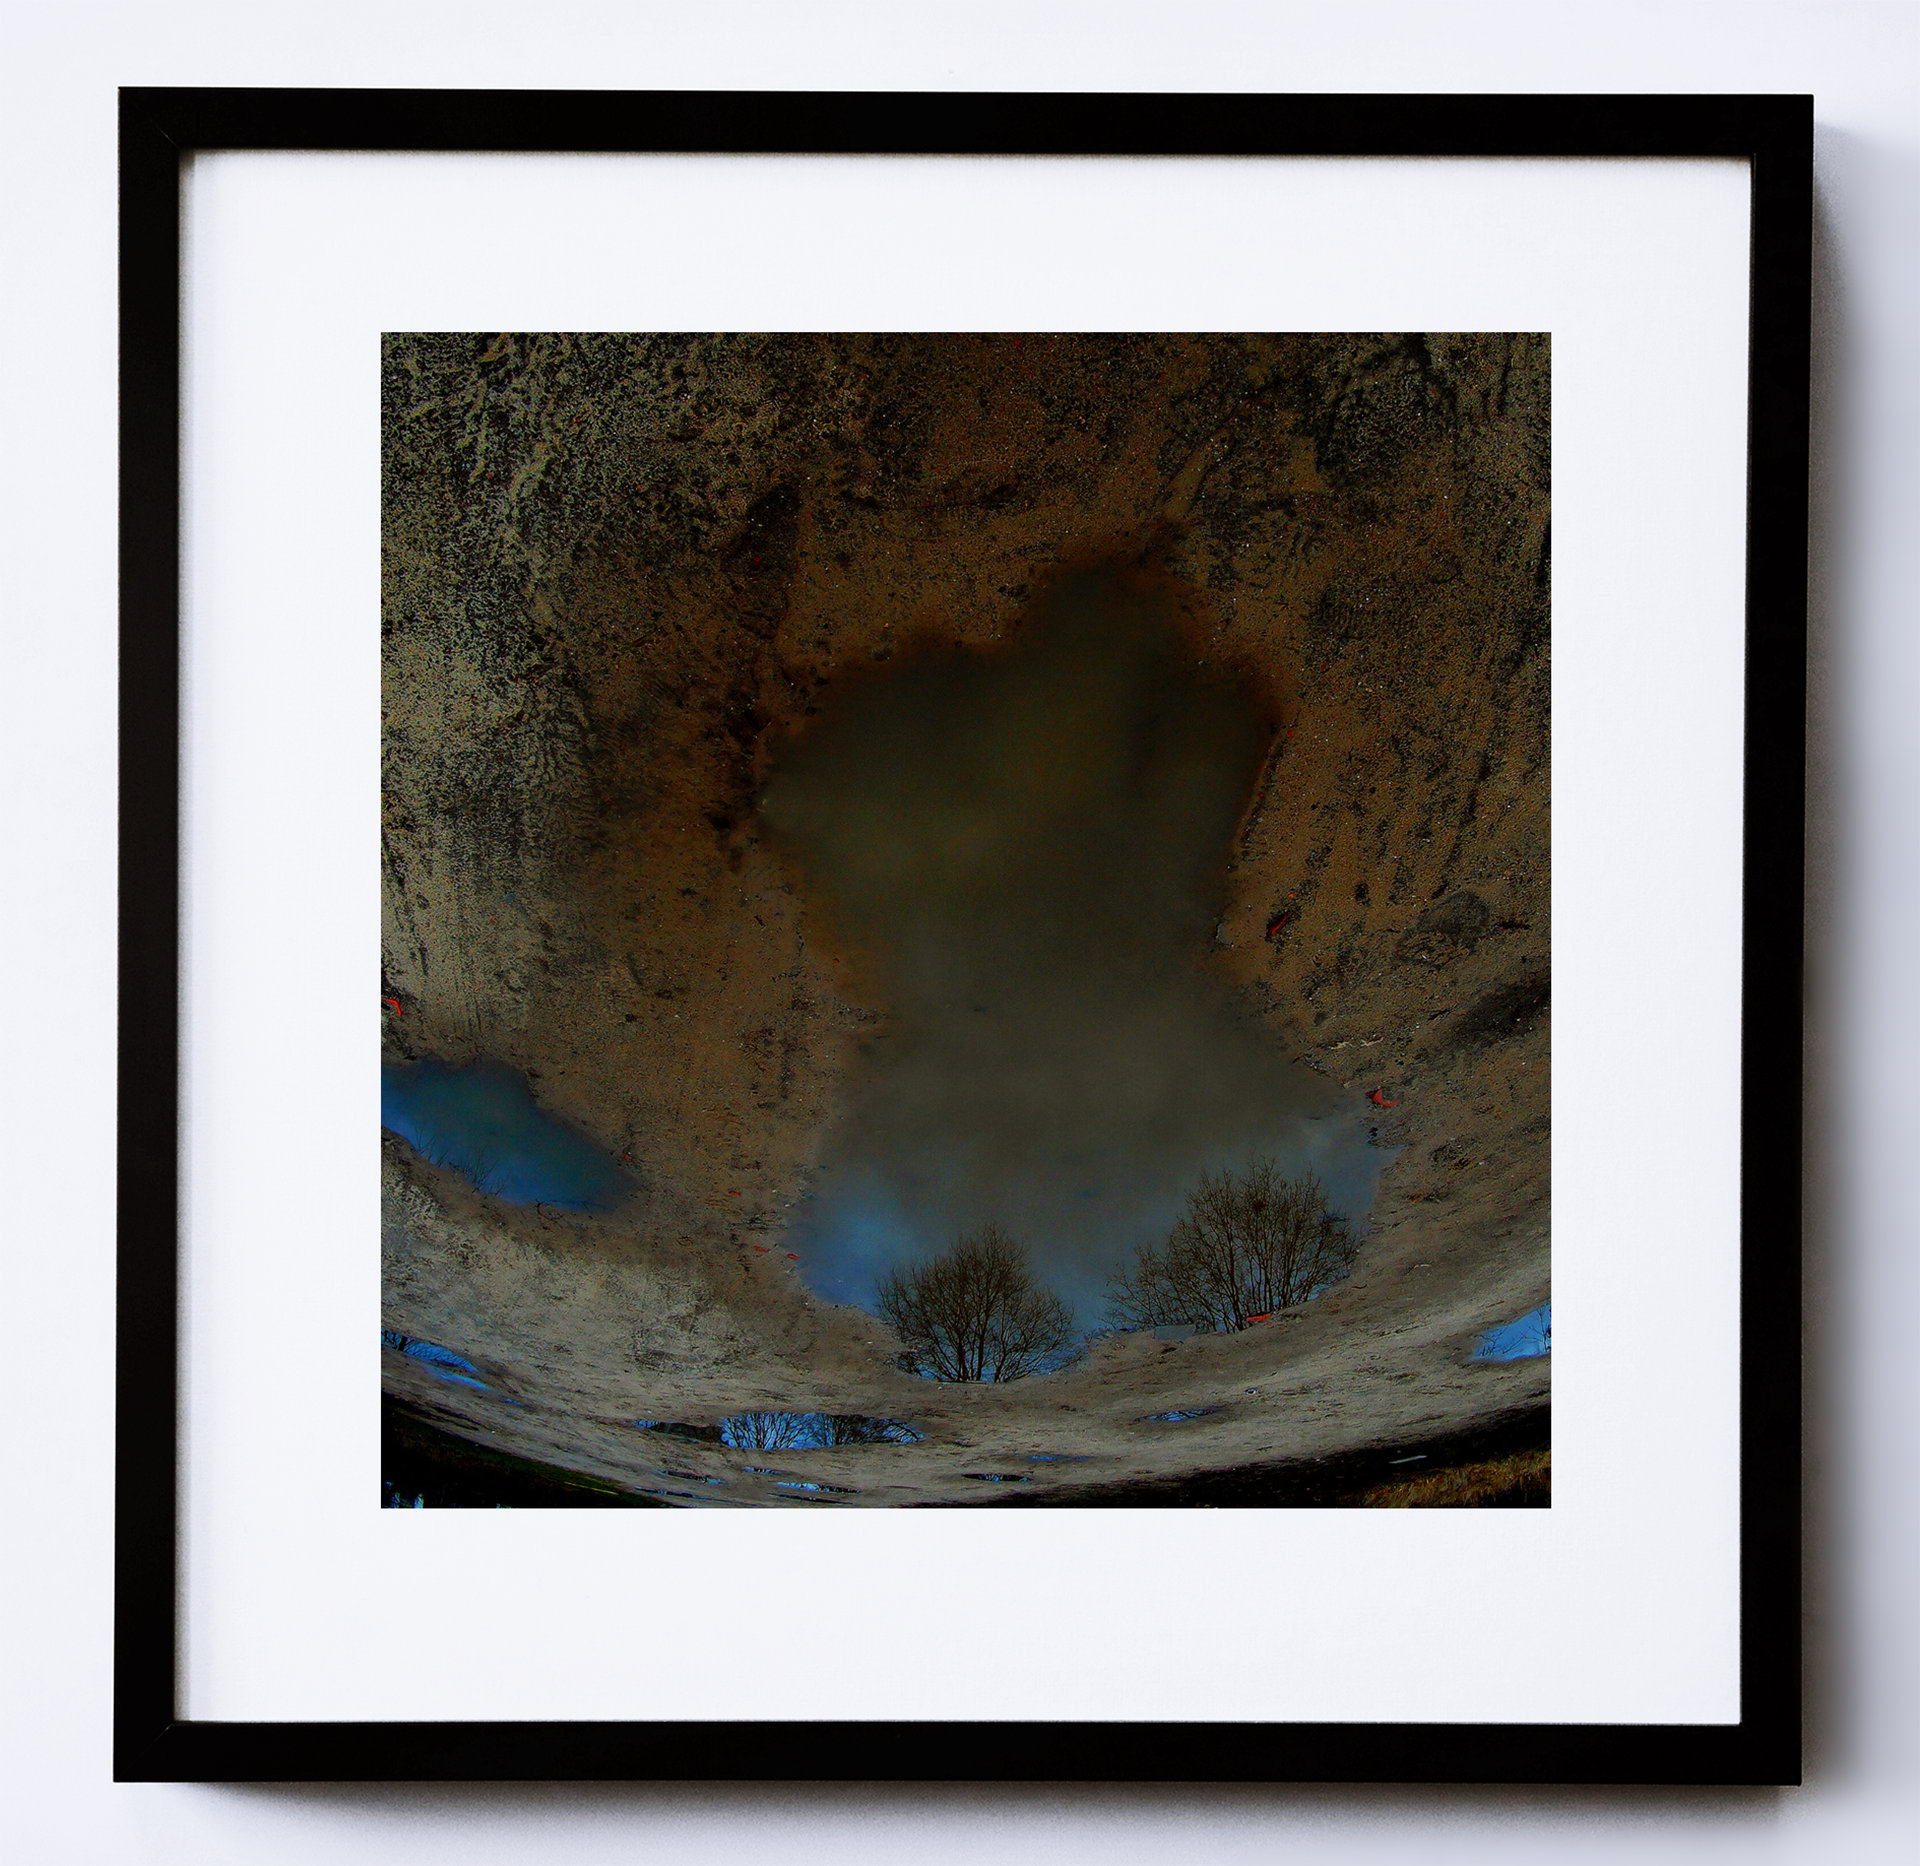 Kolorowa fotografia, utrzymana w ciemnej kolorystyce, ukazująca kałużę z odbijającymi się w niej fragmentami nieba.